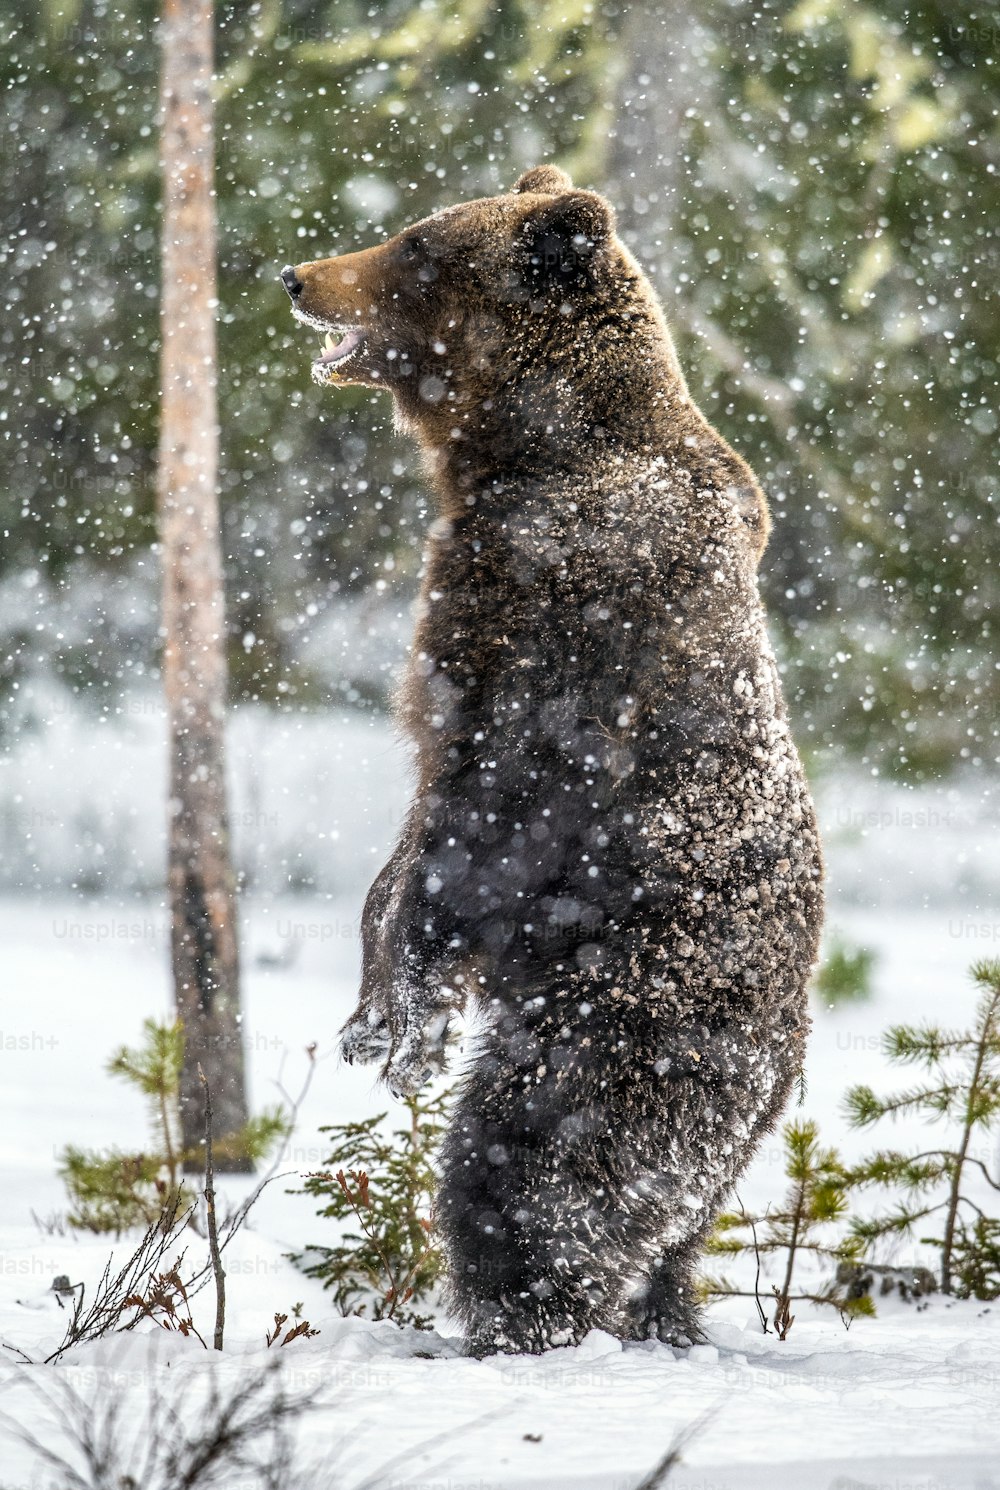 Oso pardo de pie sobre sus patas traseras en la nieve en el bosque invernal. Nevada. Nombre científico: Ursus arctos. Hábitat natural. Temporada de invierno.